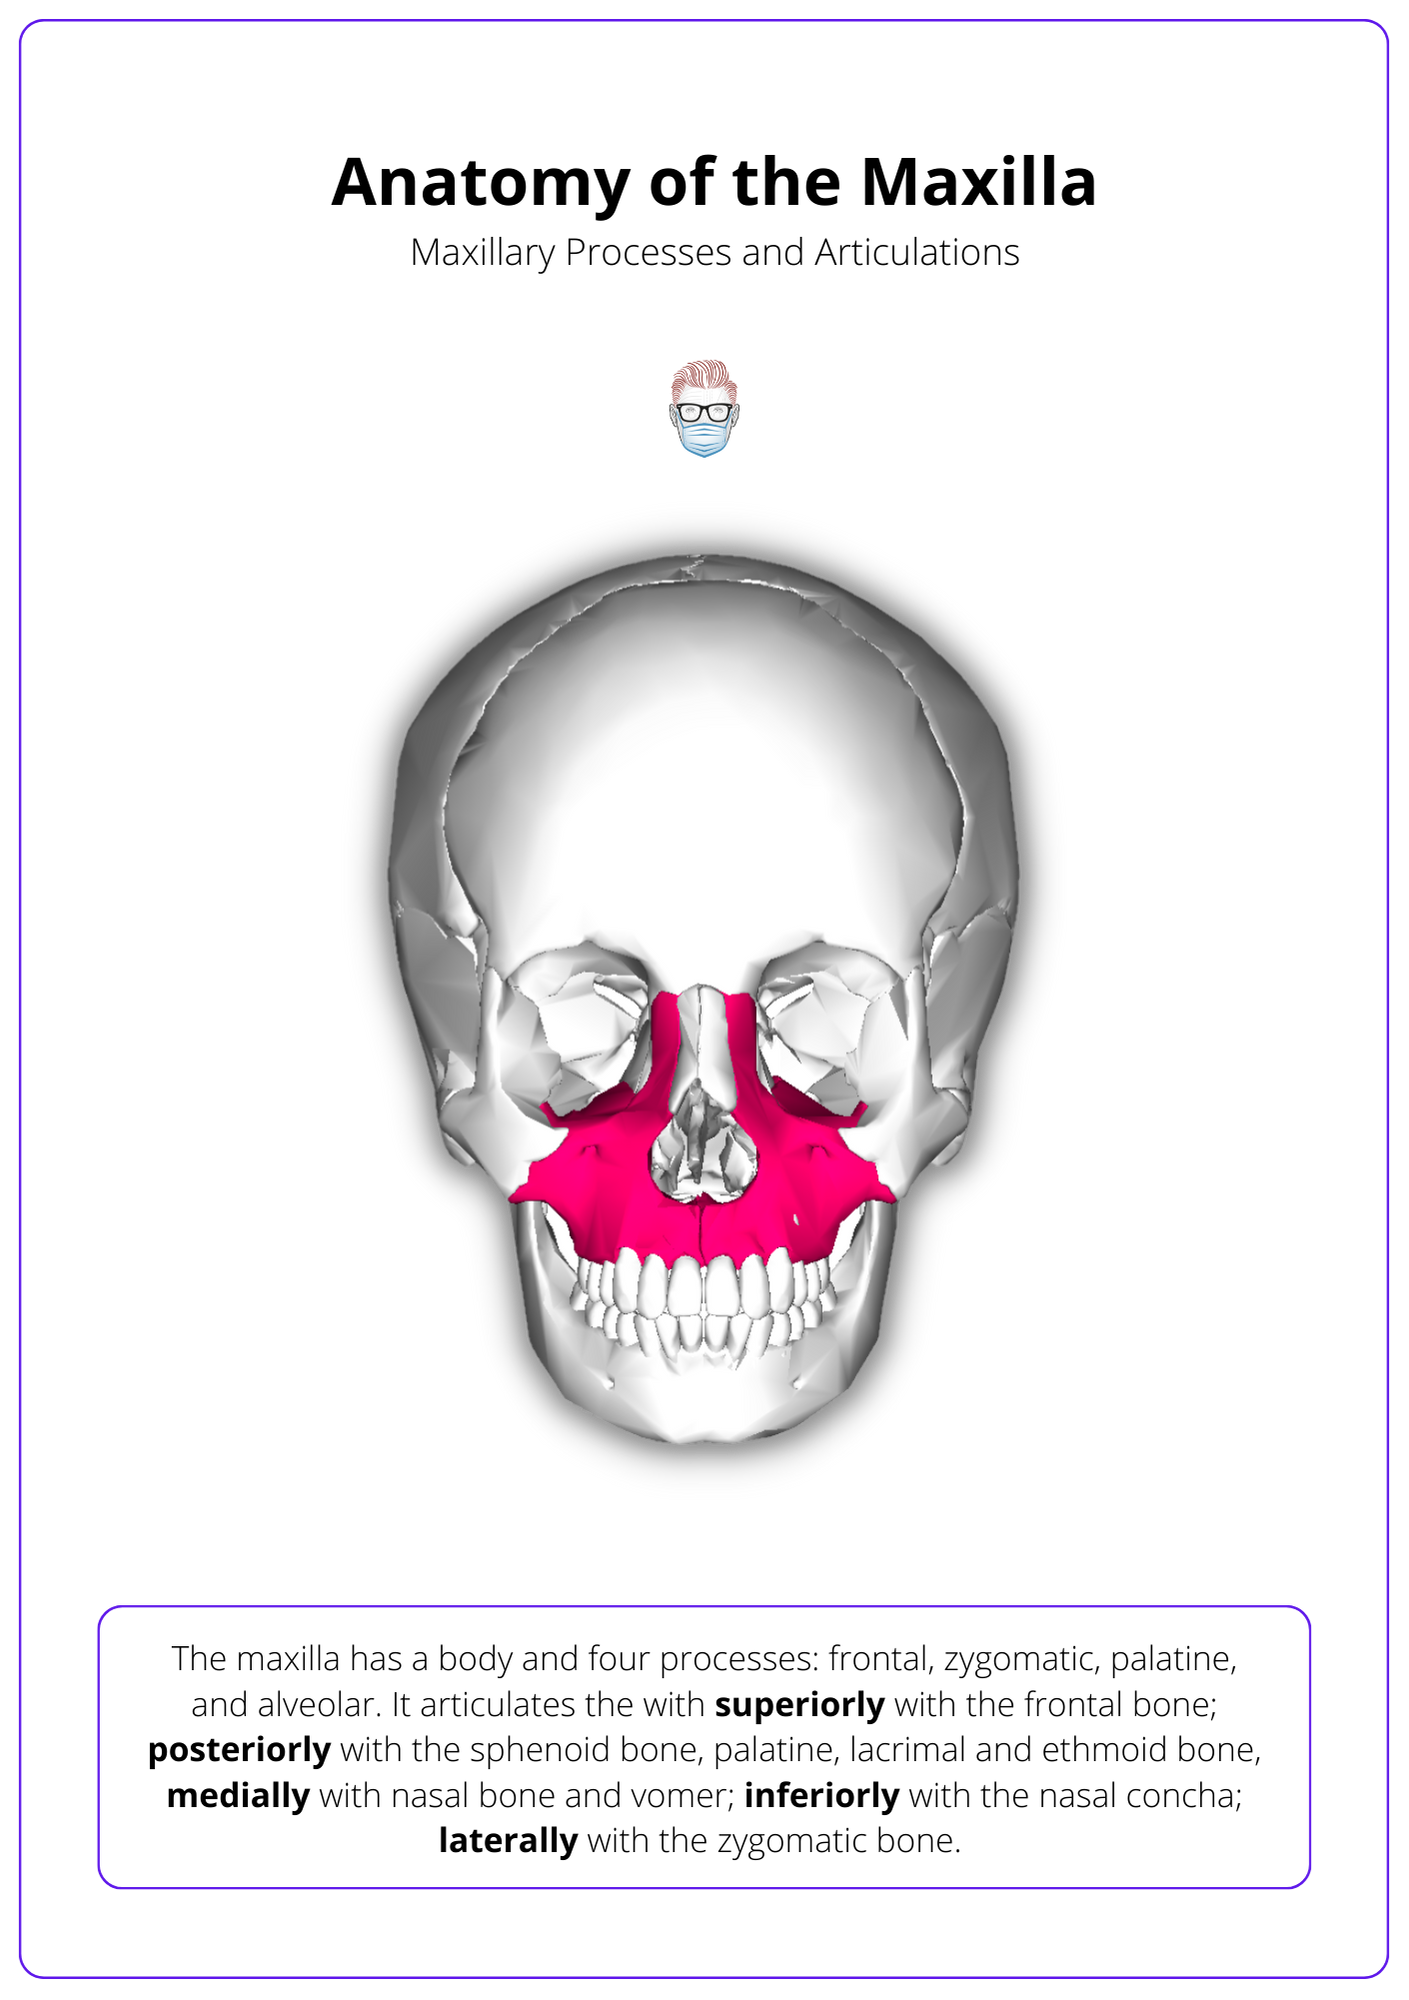 anatomy of the maxilla, maxillary reconstruction, maxillary processes